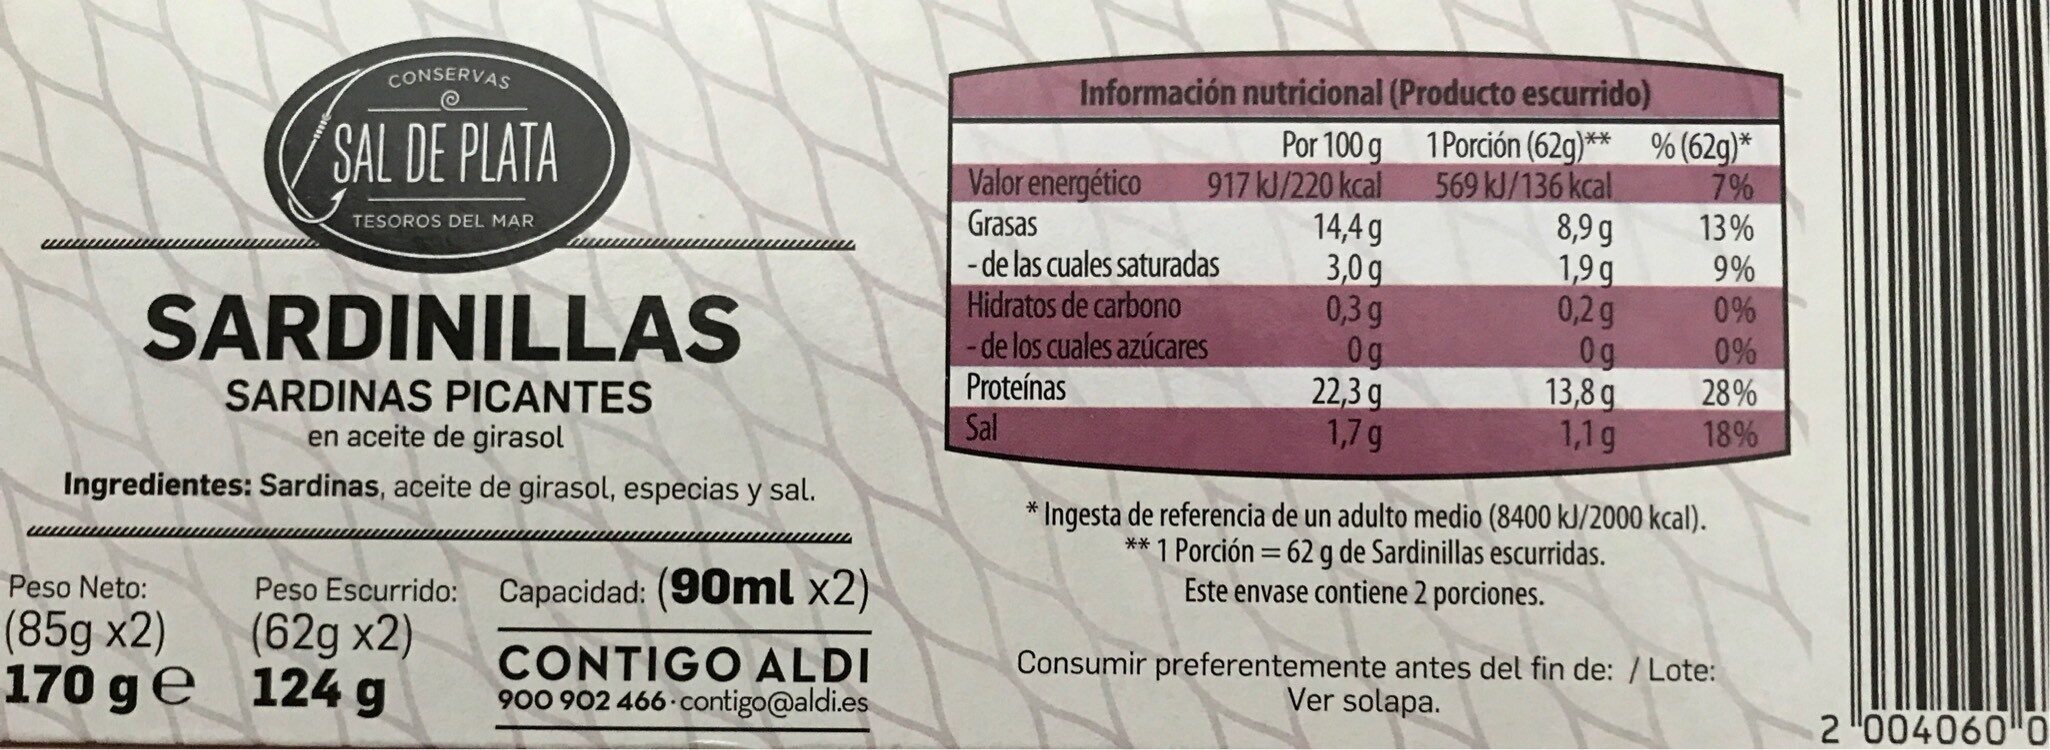 Sardinillas picantes - Nutrition facts - es